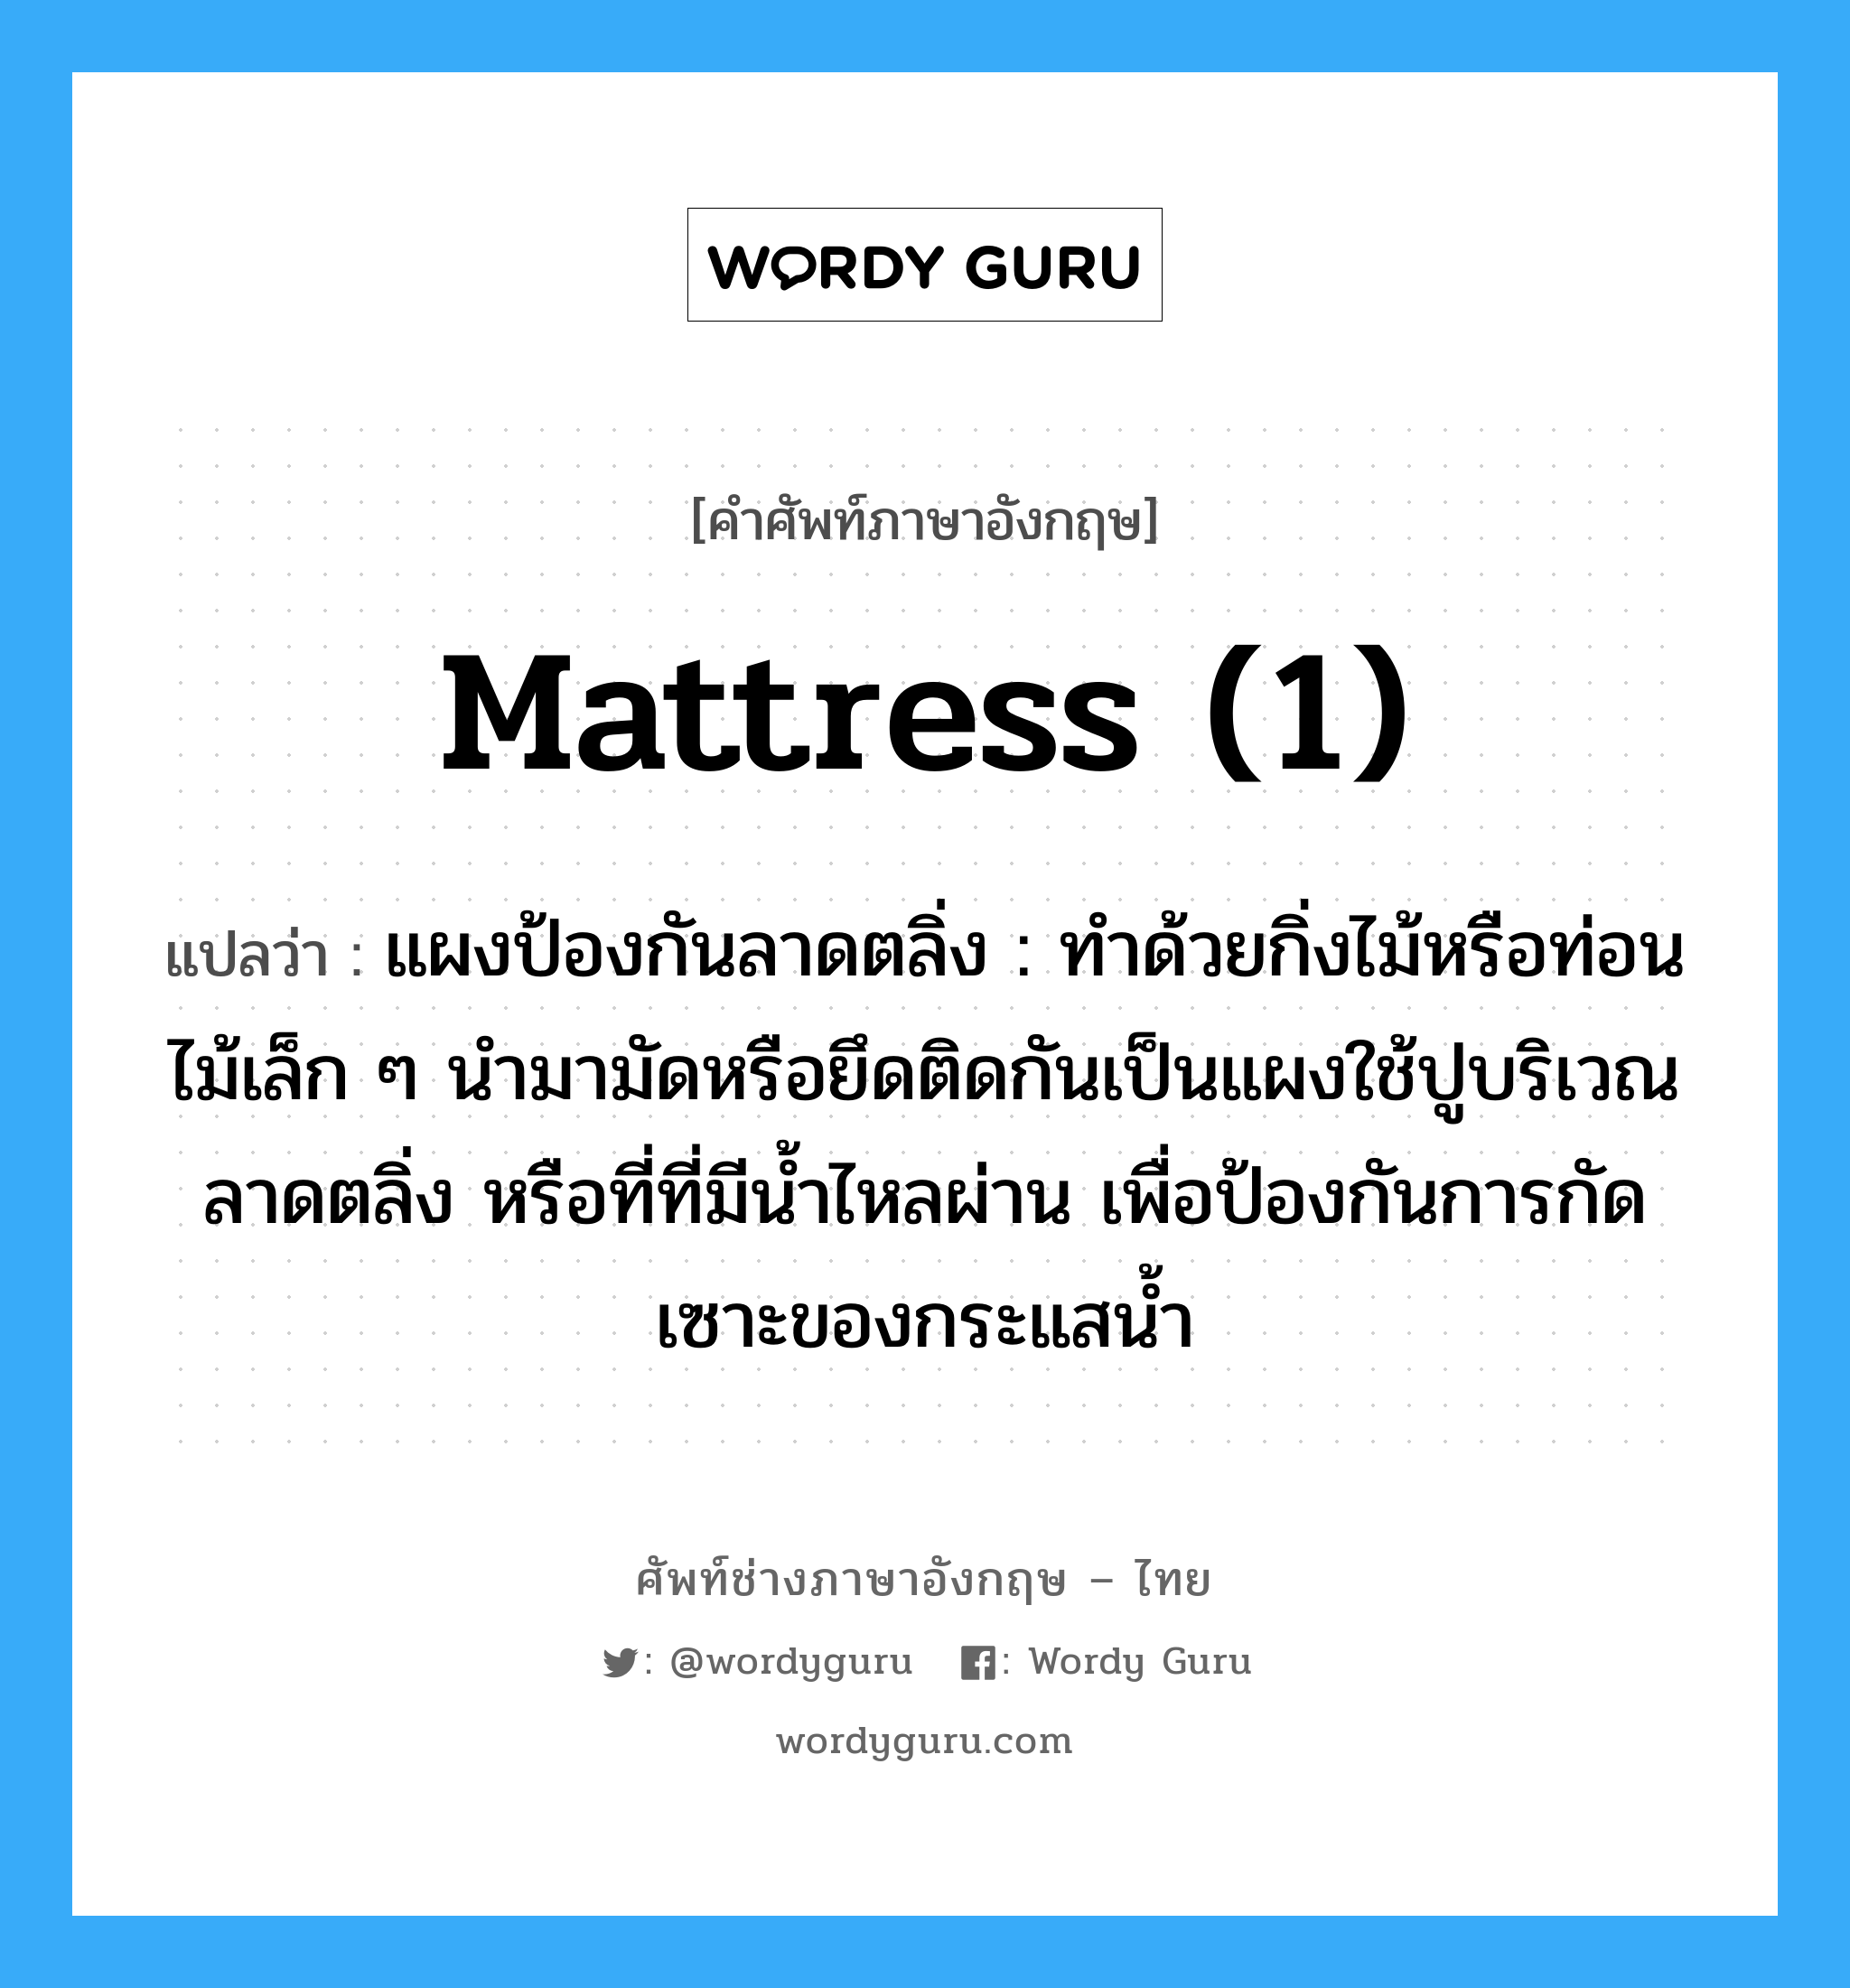 mattress (1) แปลว่า?, คำศัพท์ช่างภาษาอังกฤษ - ไทย mattress (1) คำศัพท์ภาษาอังกฤษ mattress (1) แปลว่า แผงป้องกันลาดตลิ่ง : ทำด้วยกิ่งไม้หรือท่อนไม้เล็ก ๆ นำมามัดหรือยึดติดกันเป็นแผงใช้ปูบริเวณลาดตลิ่ง หรือที่ที่มีน้ำไหลผ่าน เพื่อป้องกันการกัดเซาะของกระแสน้ำ